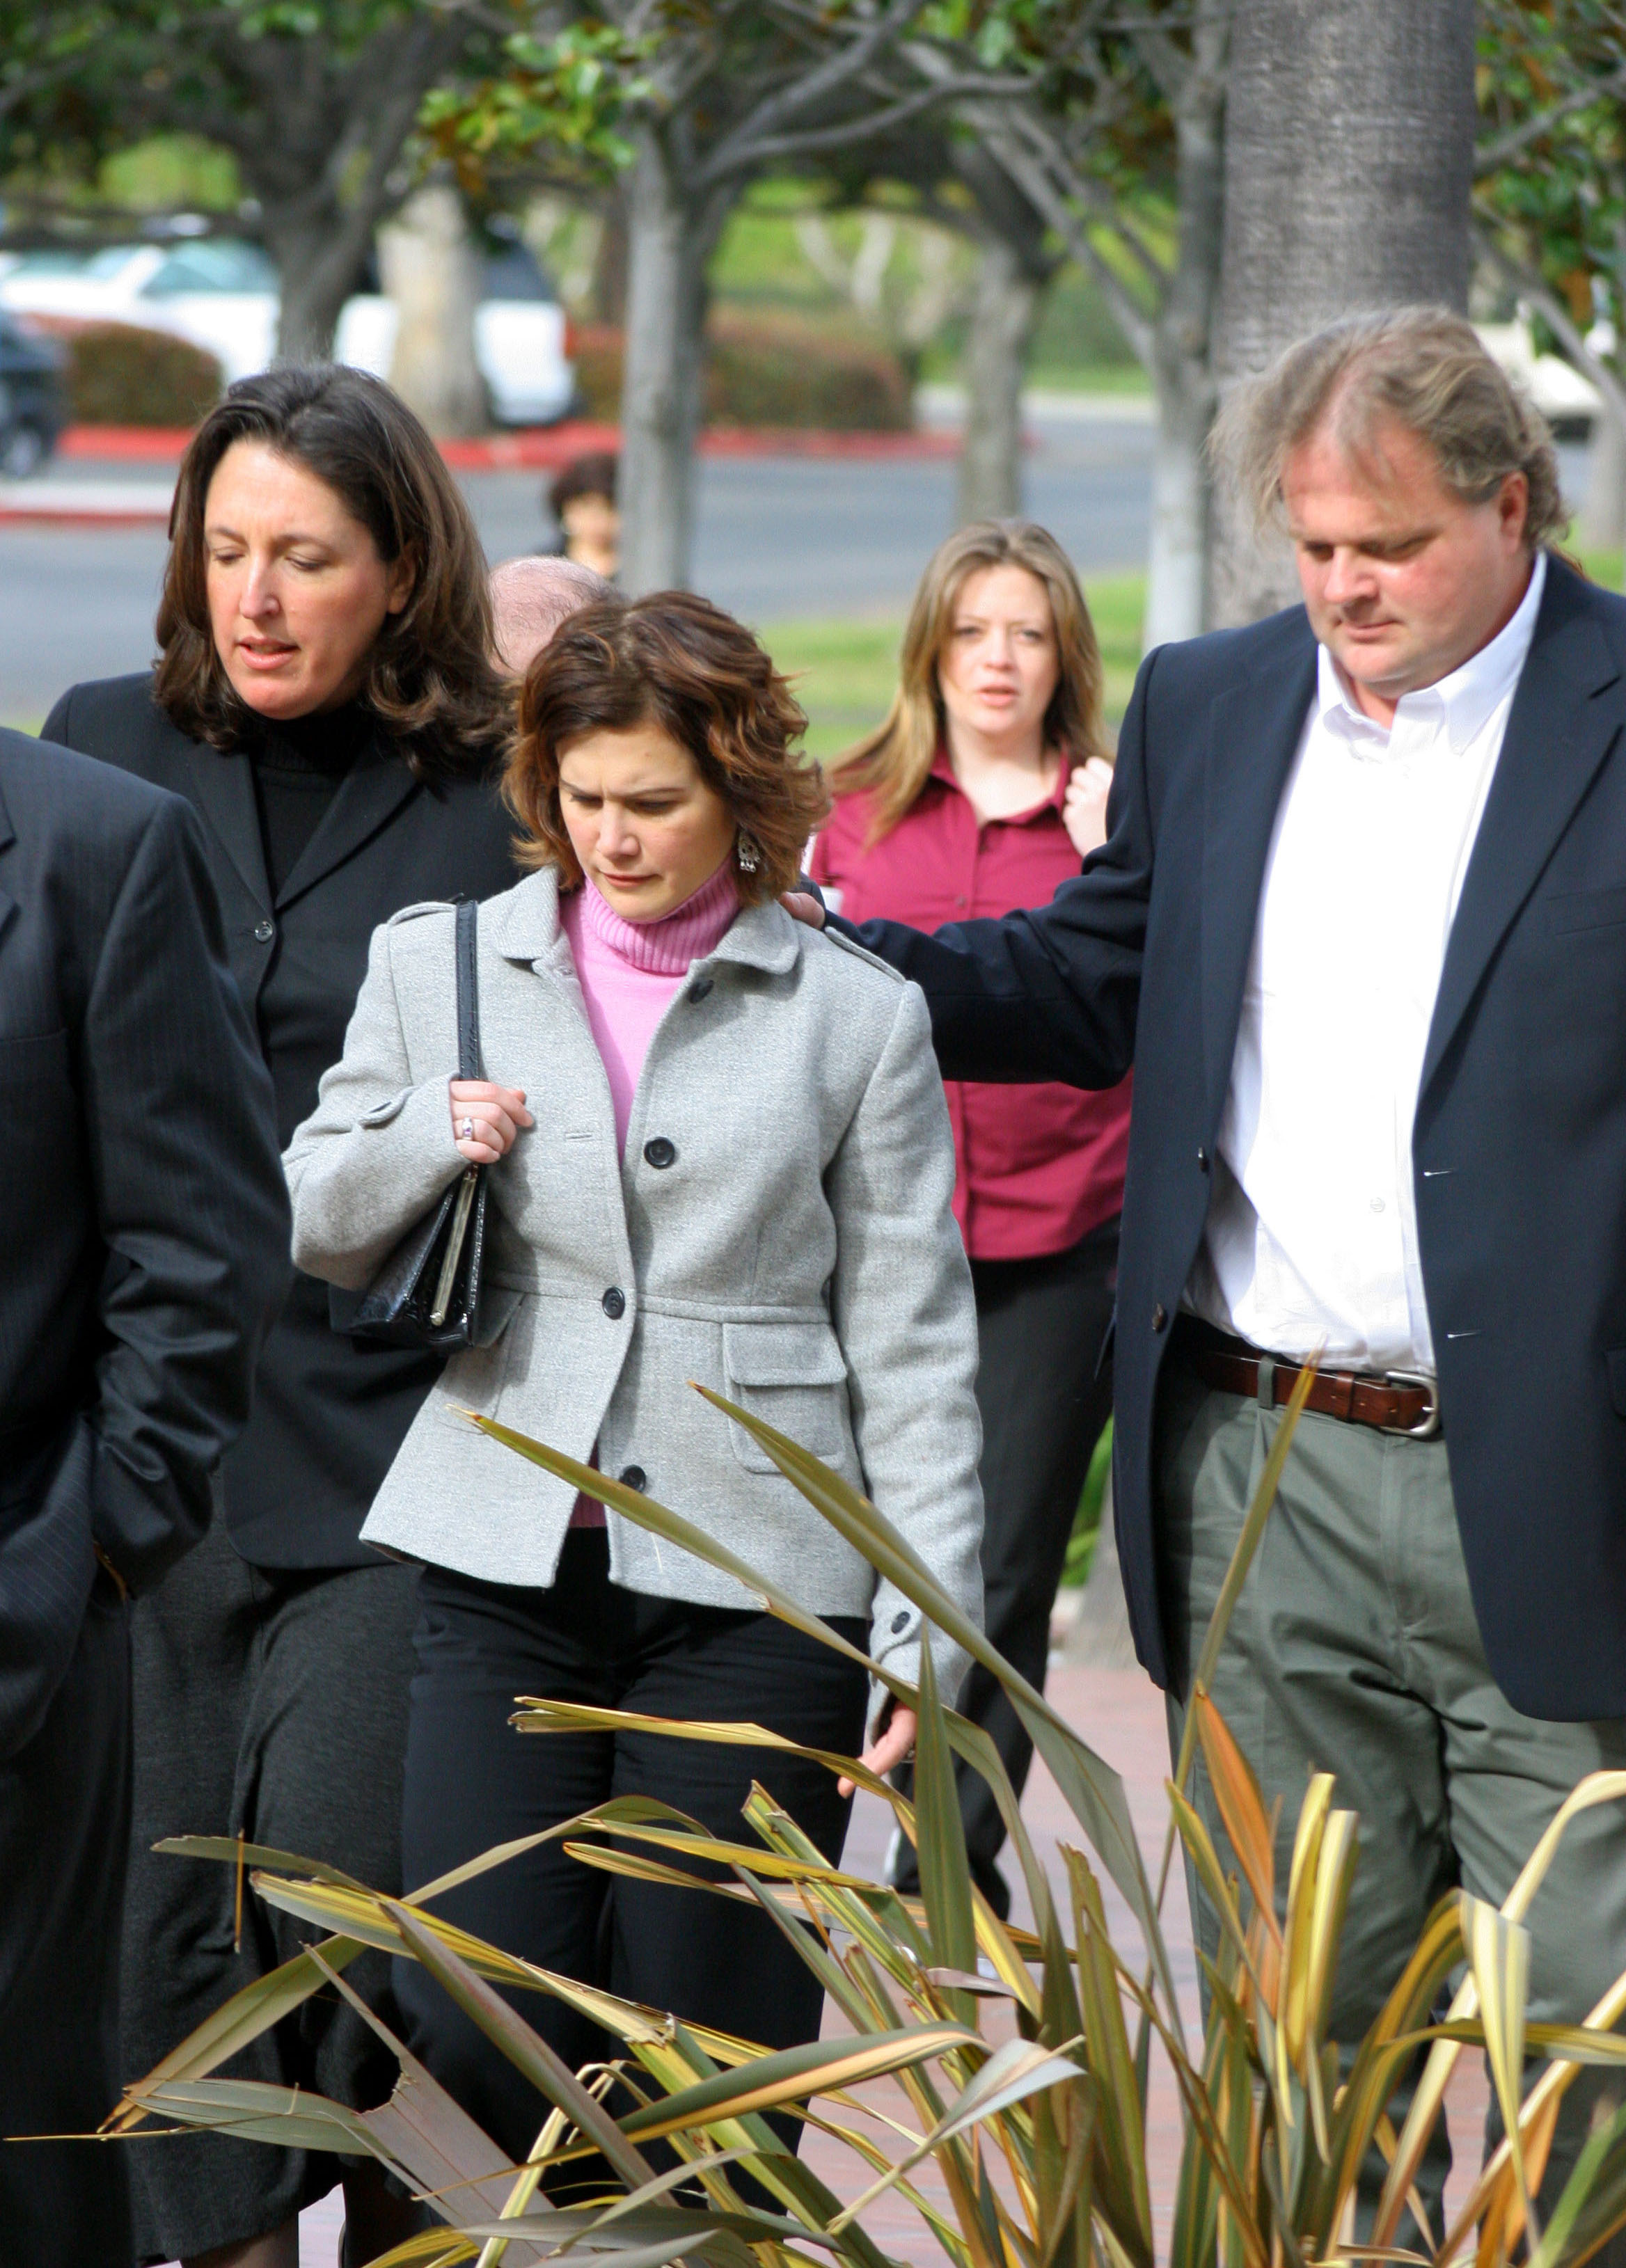 El abogado defensor Blair Berk, Tracey Gold y su marido Roby Marshall en la Sala de Justicia de Ventura para una comparecencia ante el tribunal el 6 de enero de 2005, en Ventura, California. | Fuente: Getty Images